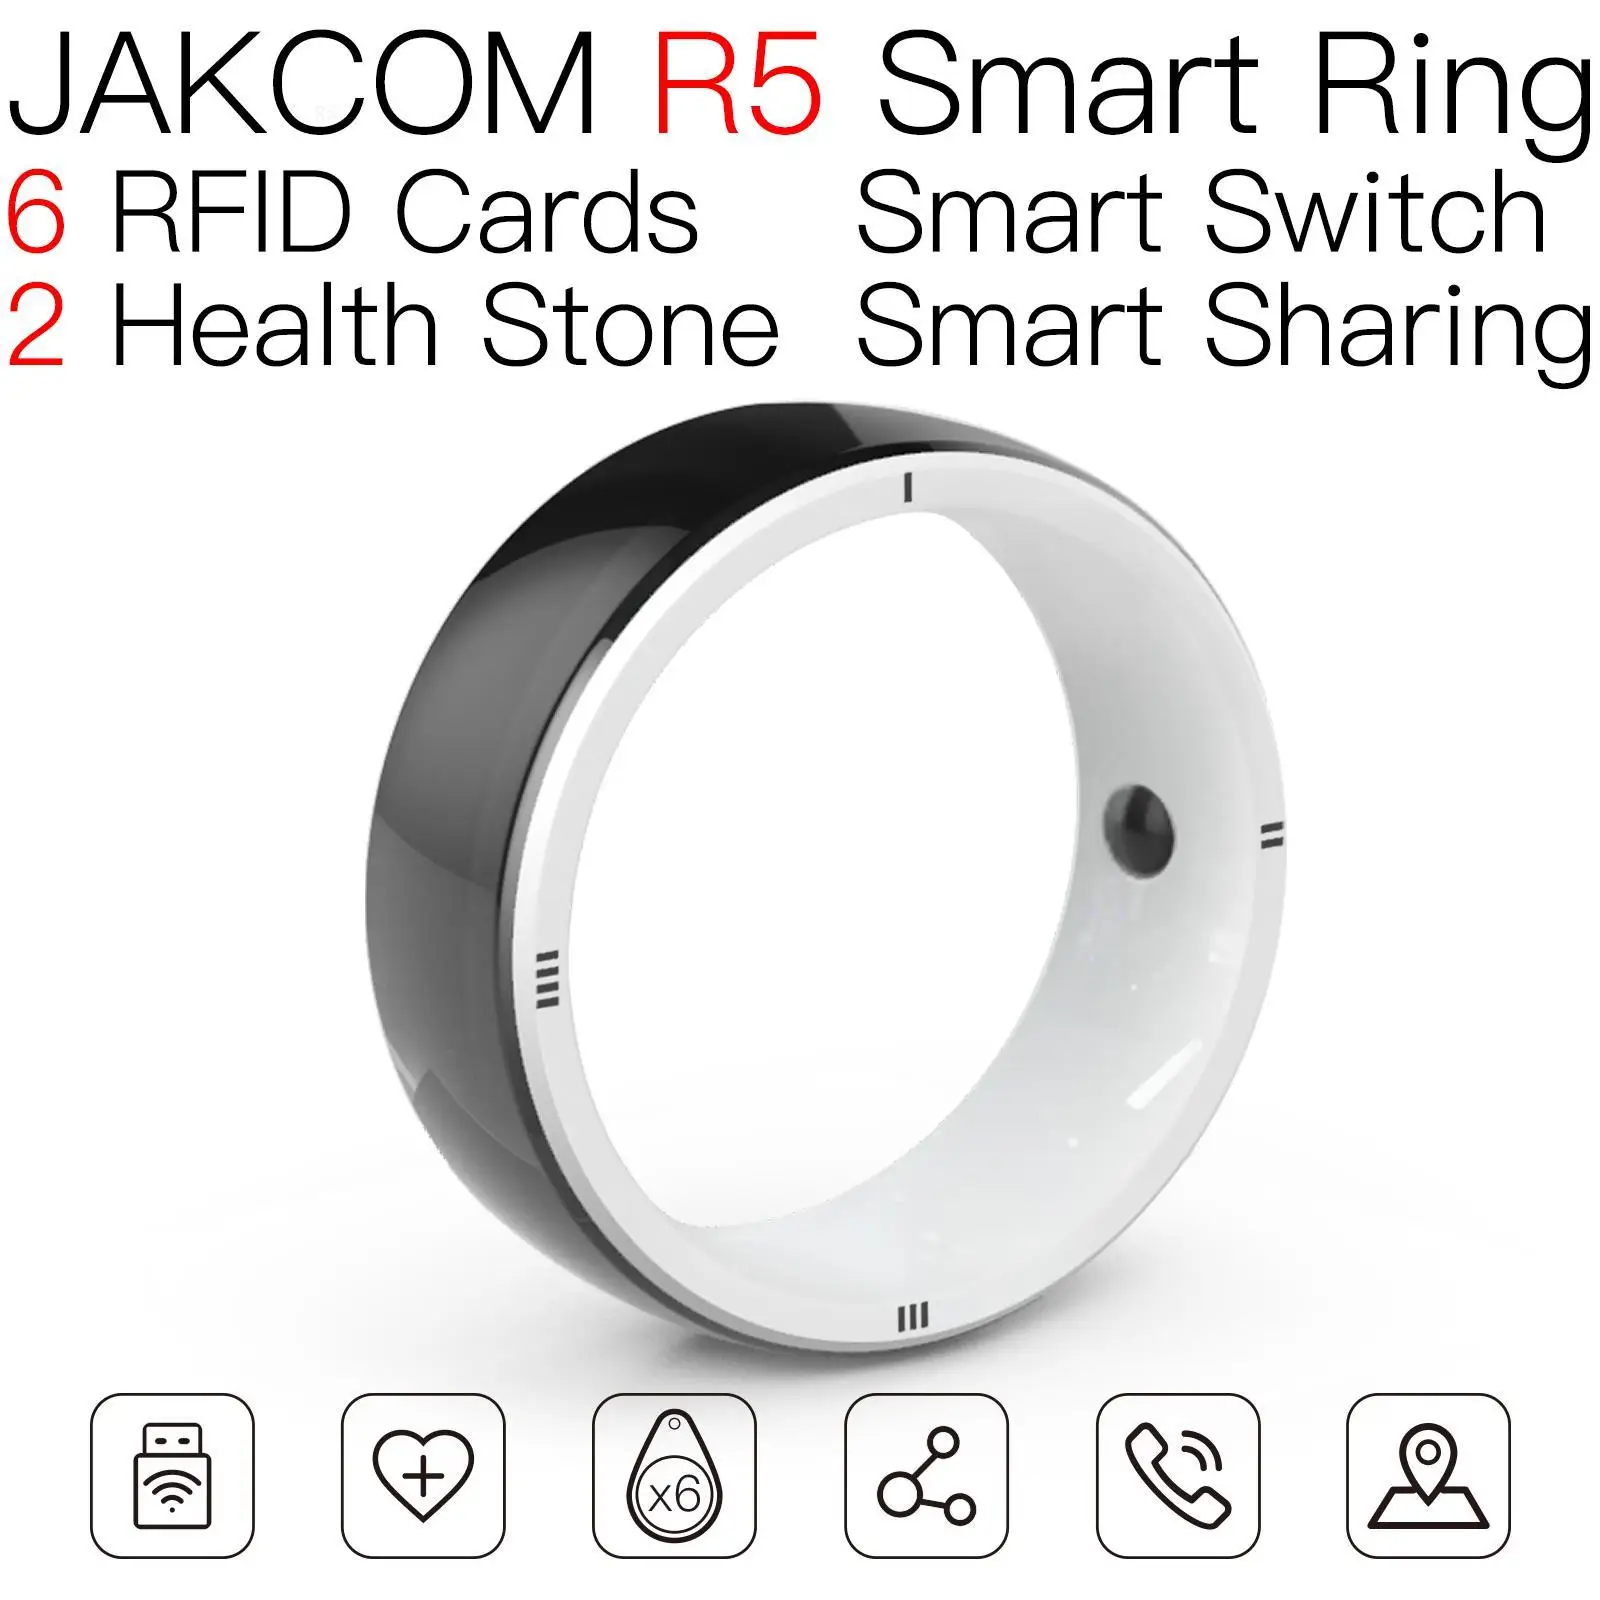 

Смарт-кольцо JAKCOM R5, супер значение как ПВХ, размер карты, этикетка 125 кГц, pbx опал, шнур, id держатель, лот ТМ rfid, инвентарь